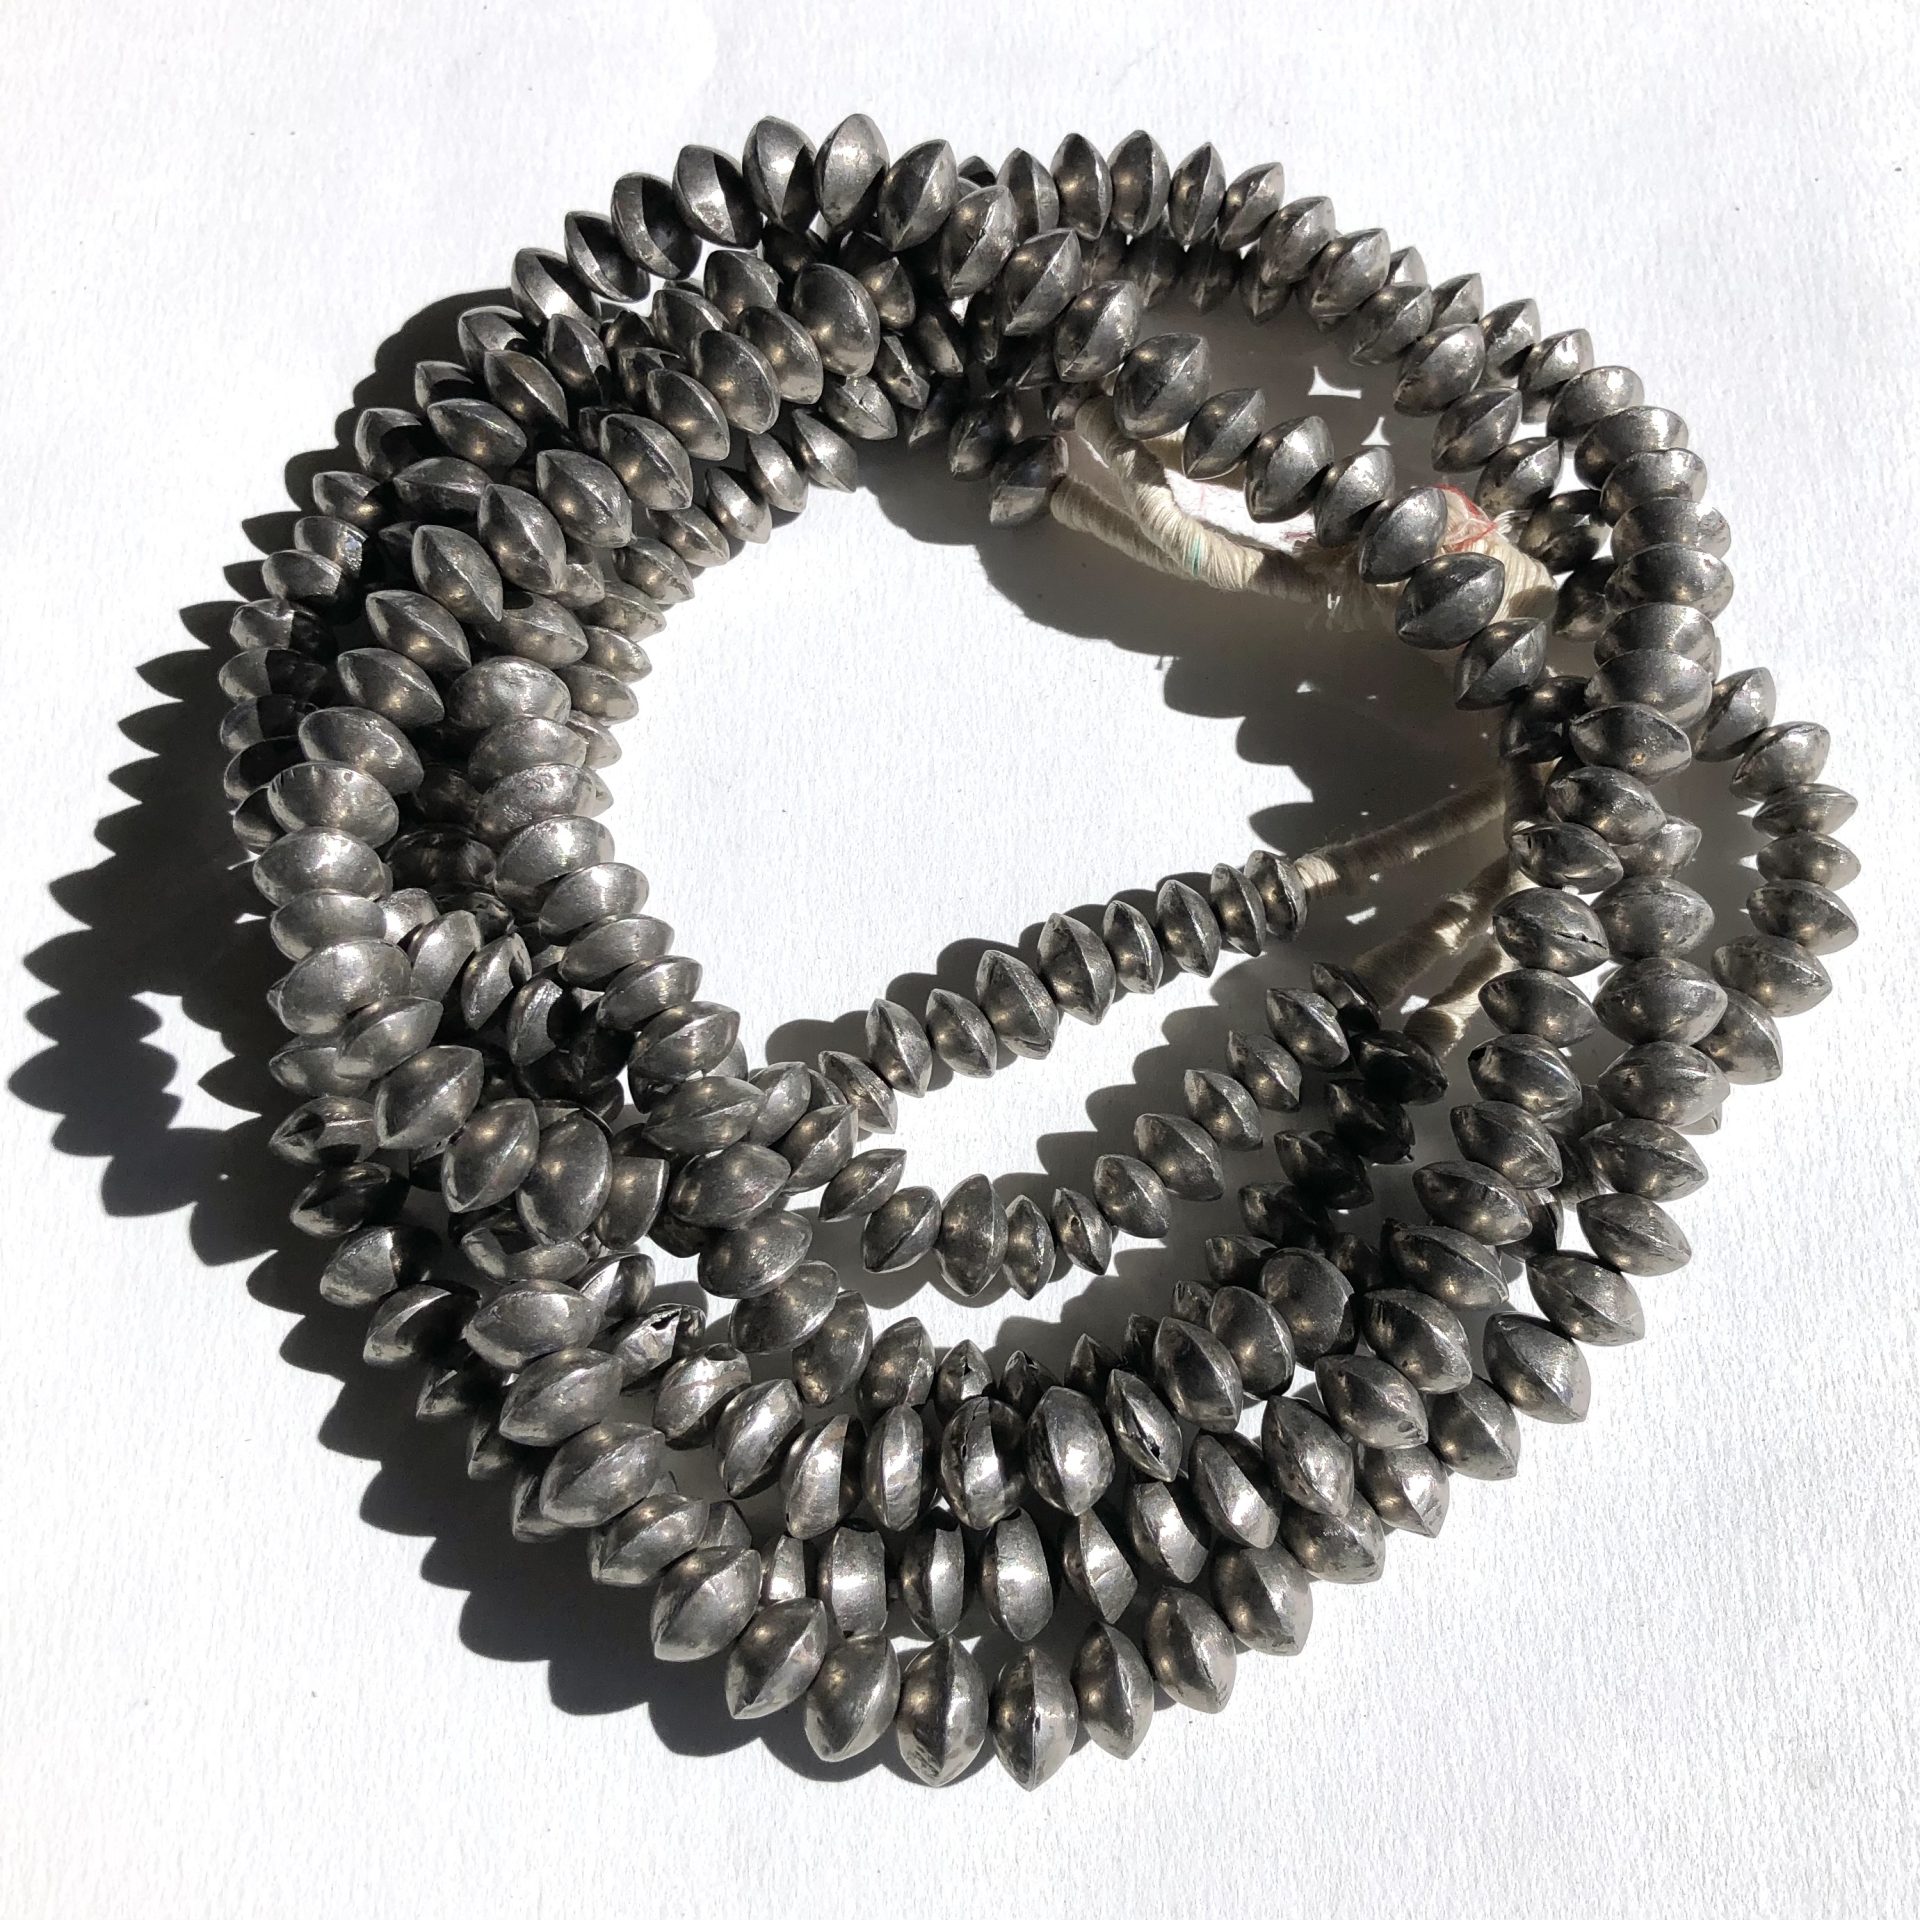 Mali Silver Beads